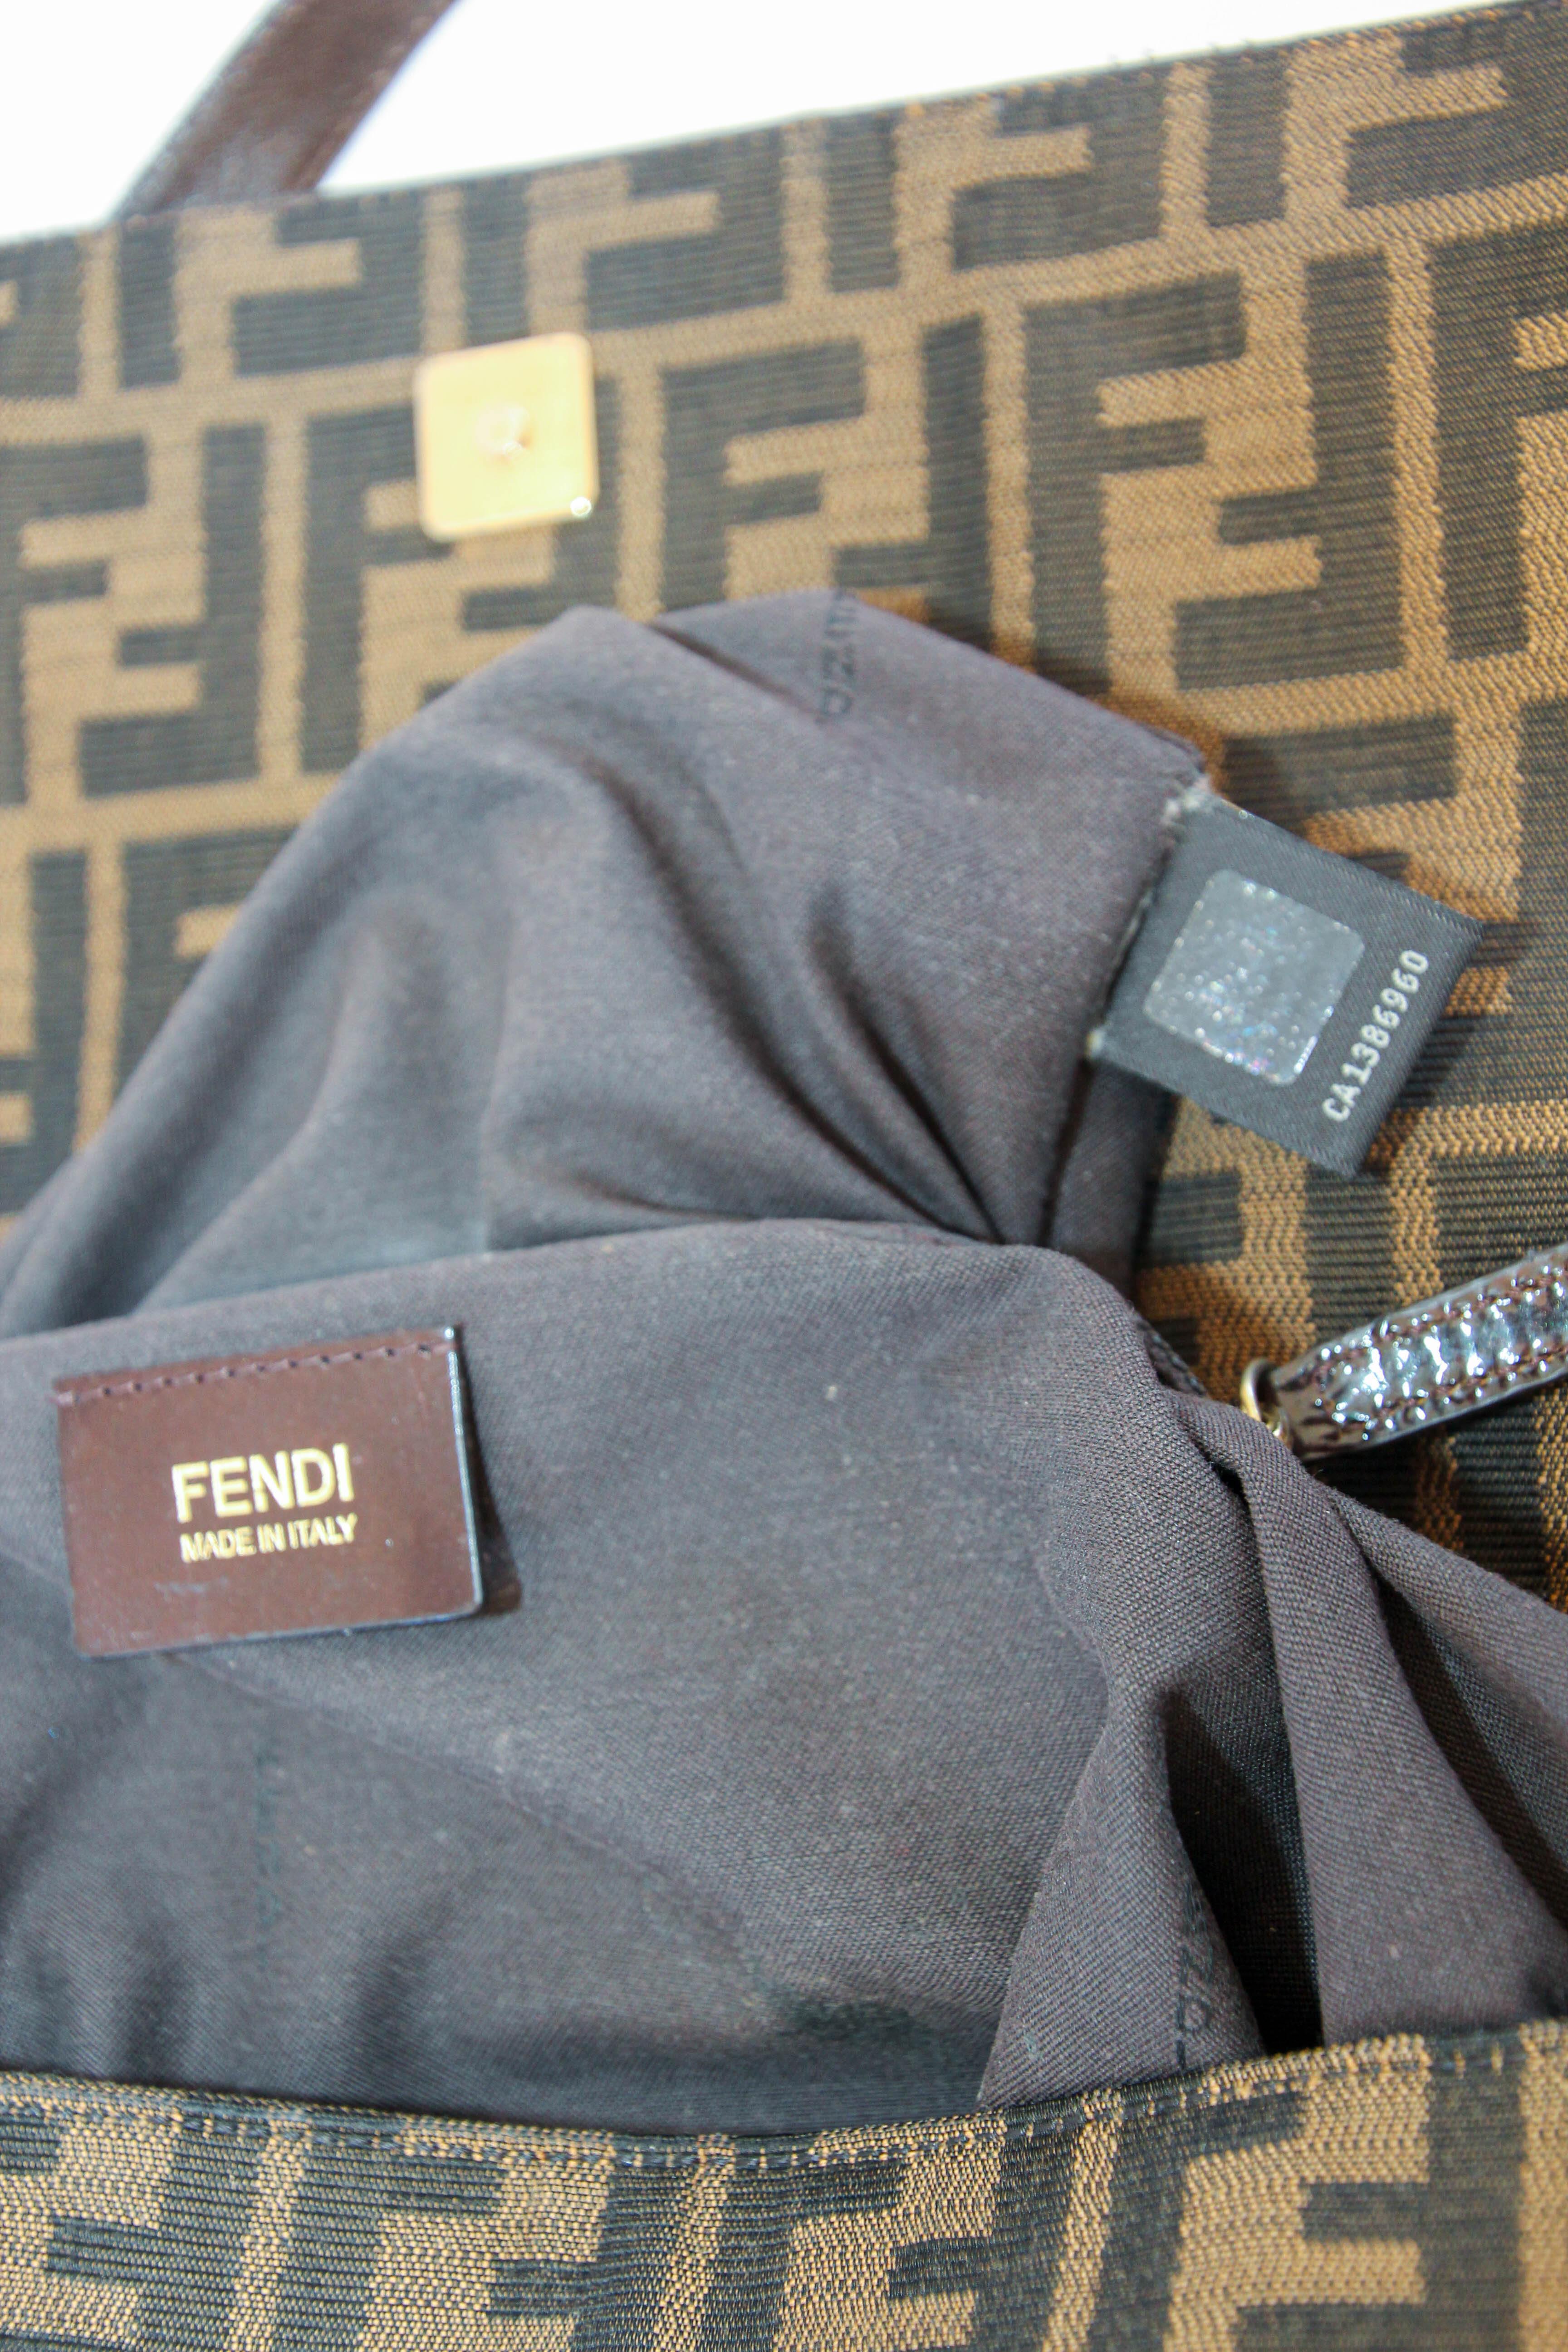 Fendi Tobacco Zucca Canvas and Patent Leather Mia Flap Handbag 11